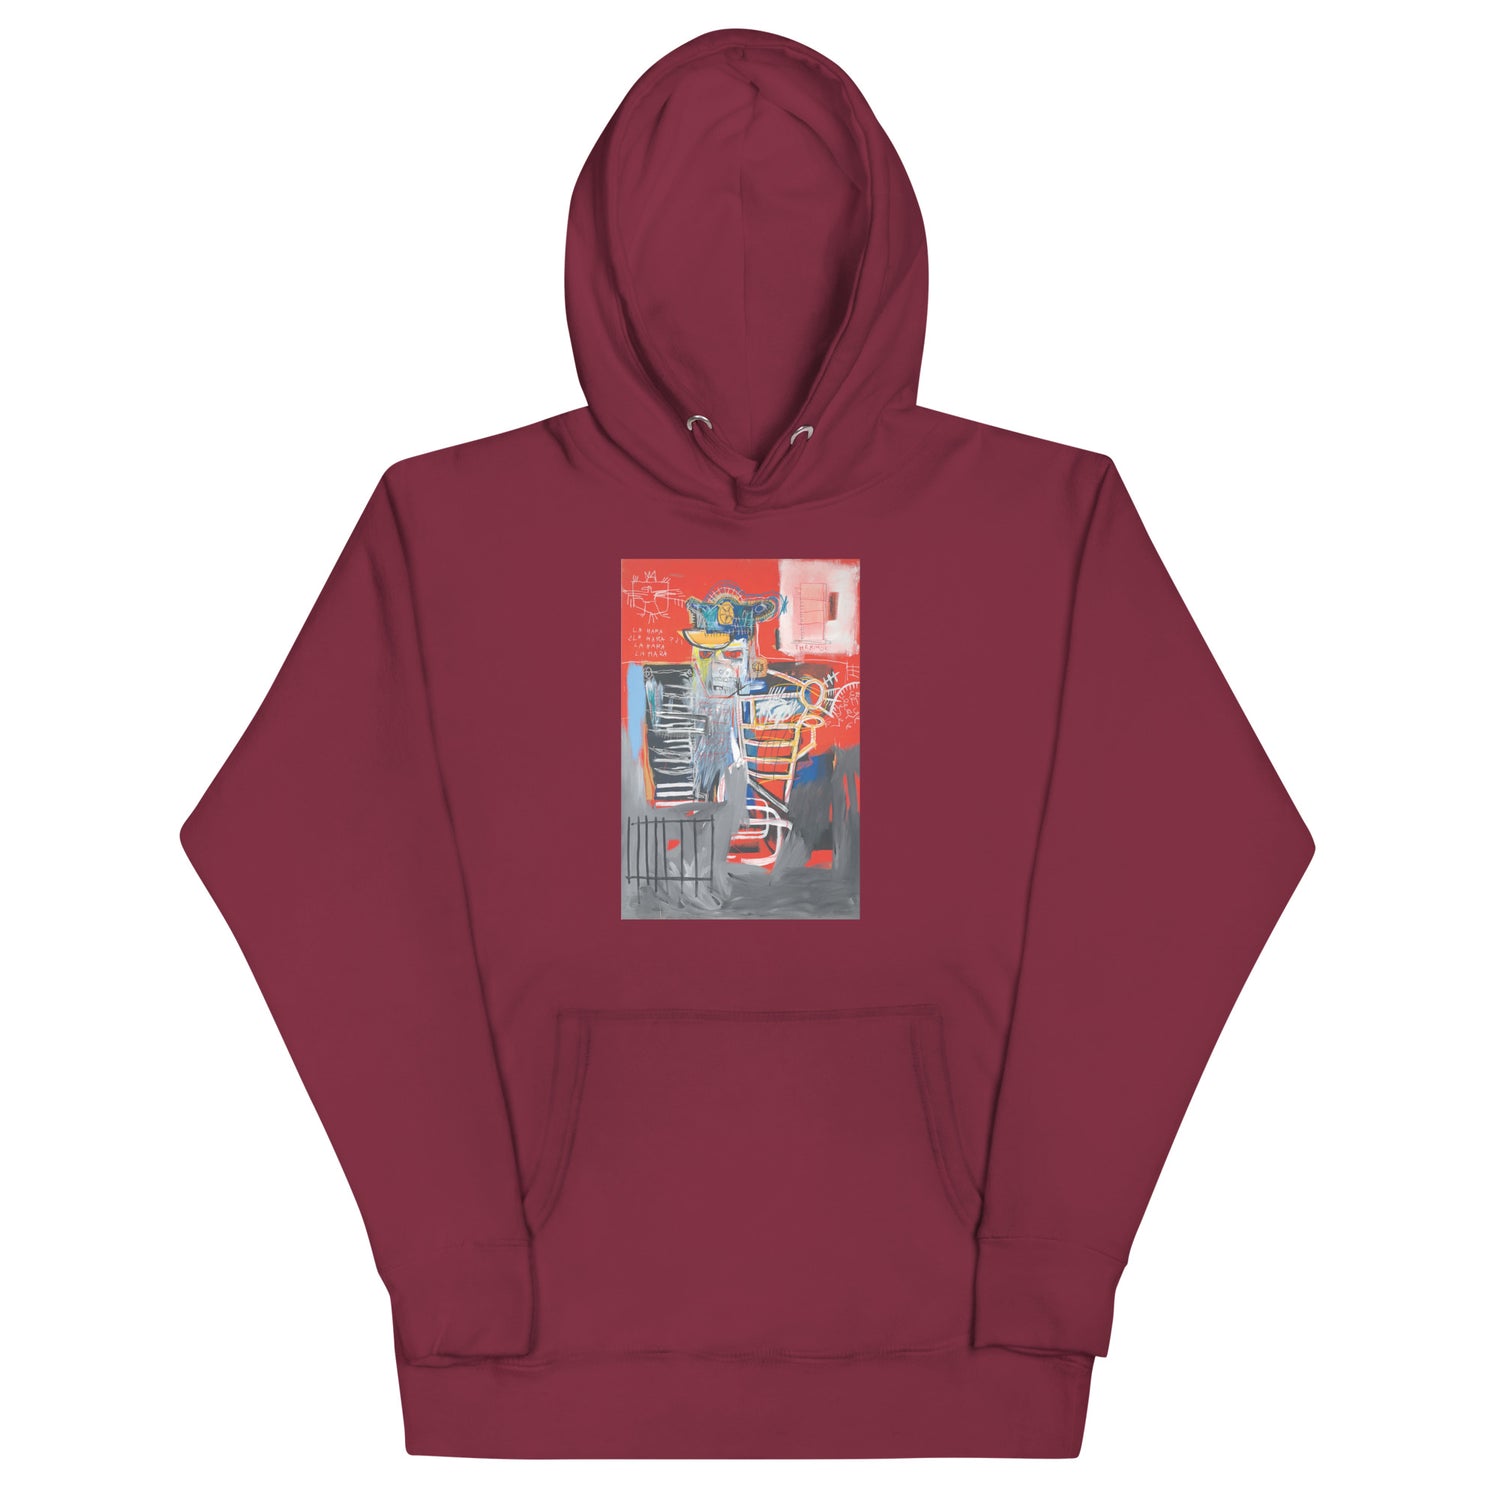 Jean-Michel Basquiat "La Hara" Artwork Printed Premium Streetwear Sweatshirt Hoodie Burgundy Red